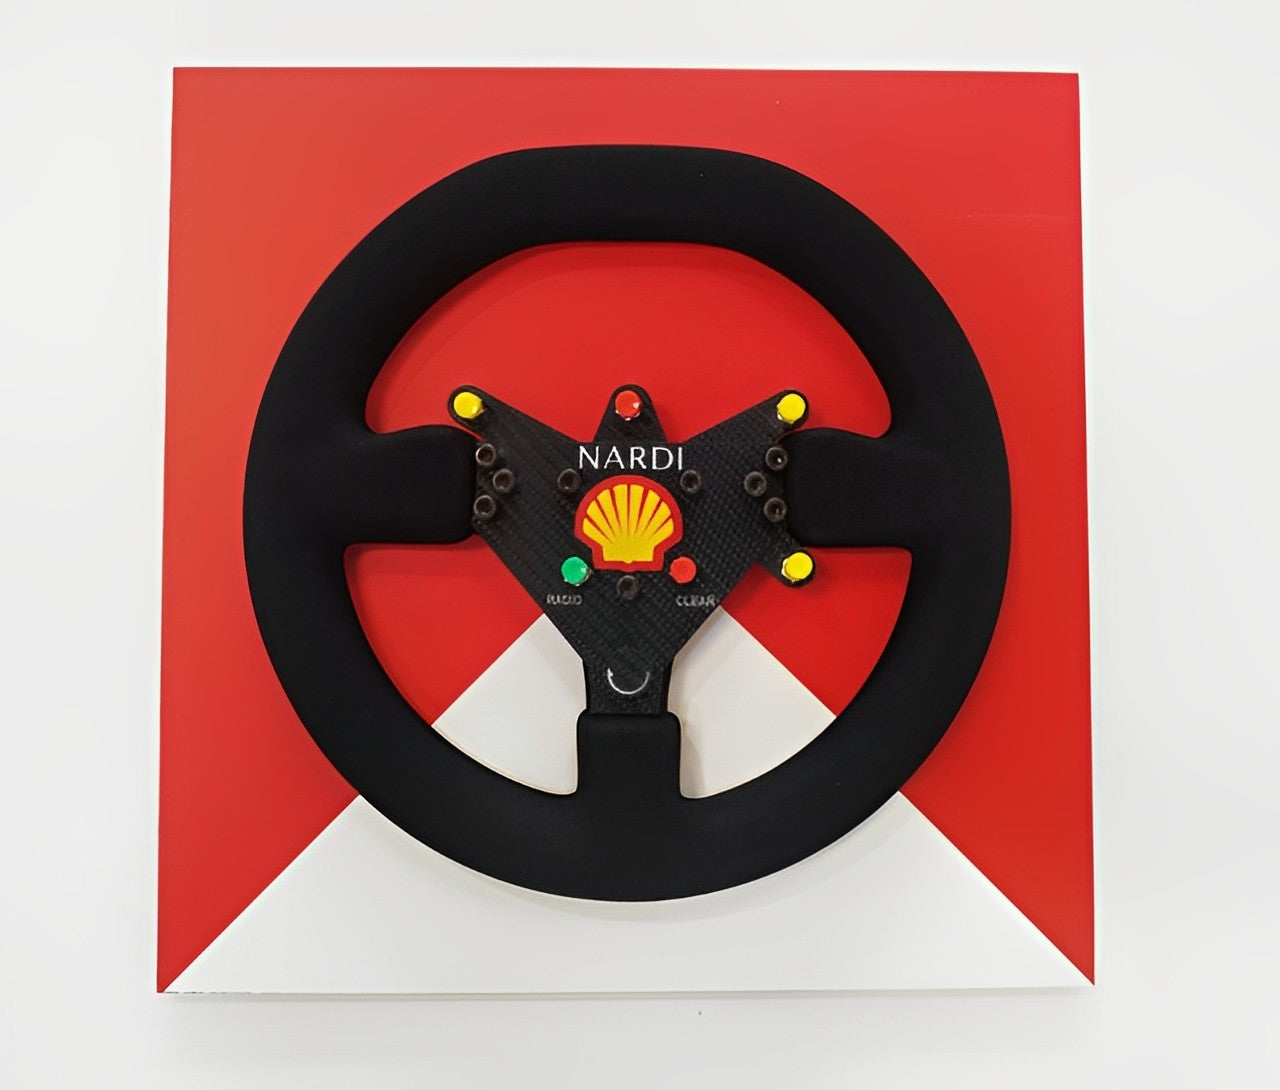 Ayrton Senna 1993 McLaren MP4/8 Steering Wheel 3D Wall Art - Team Theme